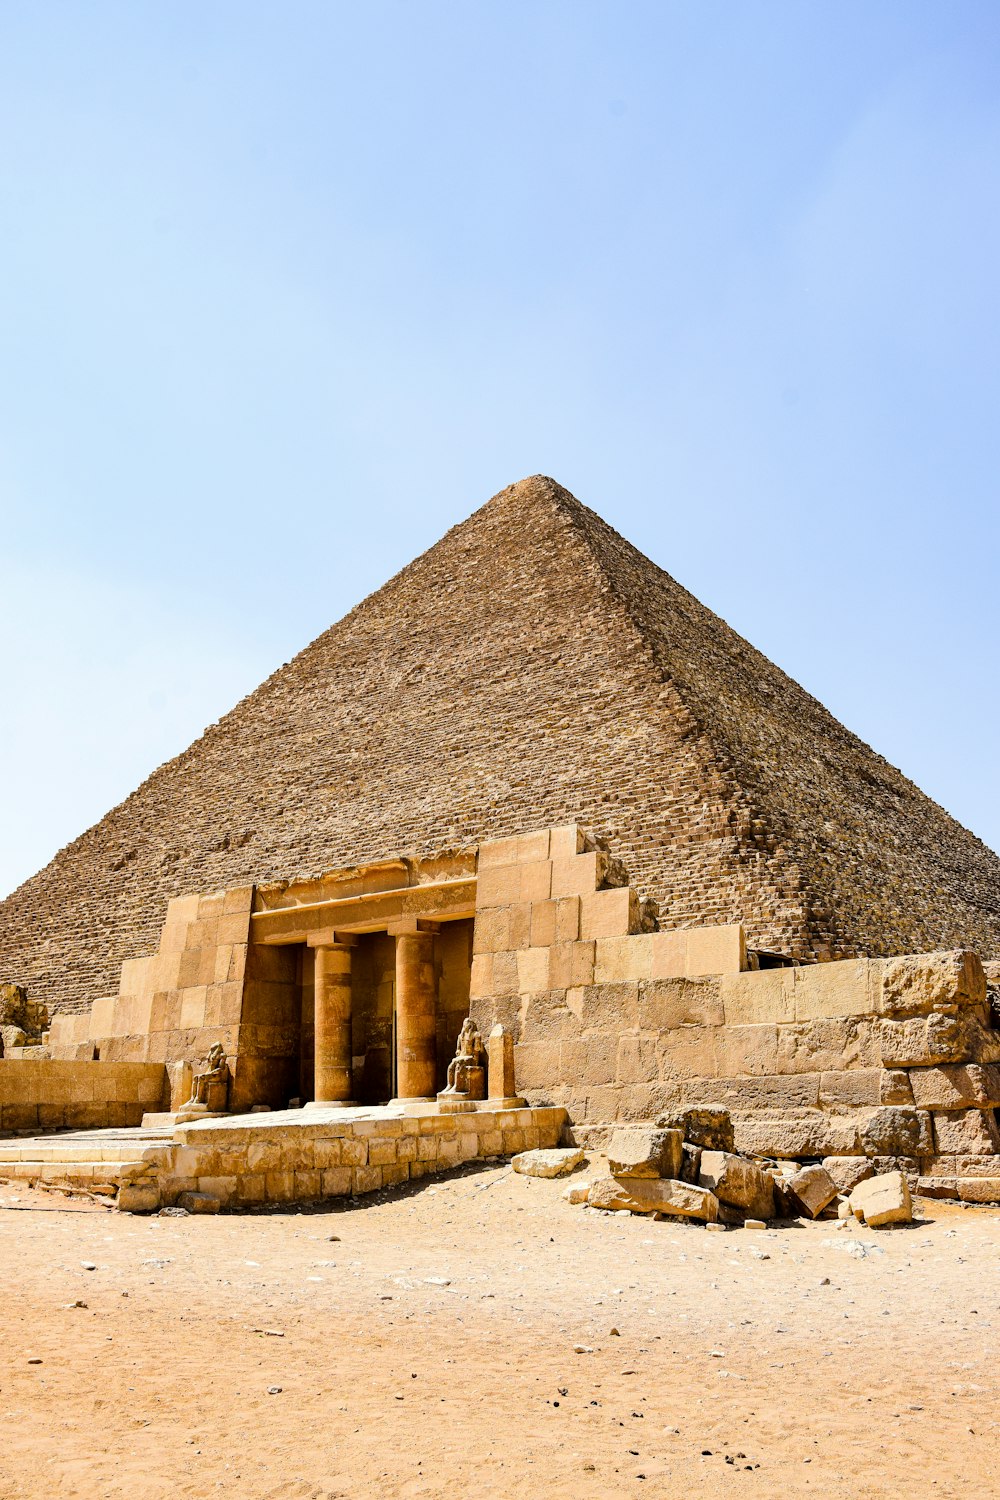 uma pirâmide muito alta com alguns degraus que levam até ela